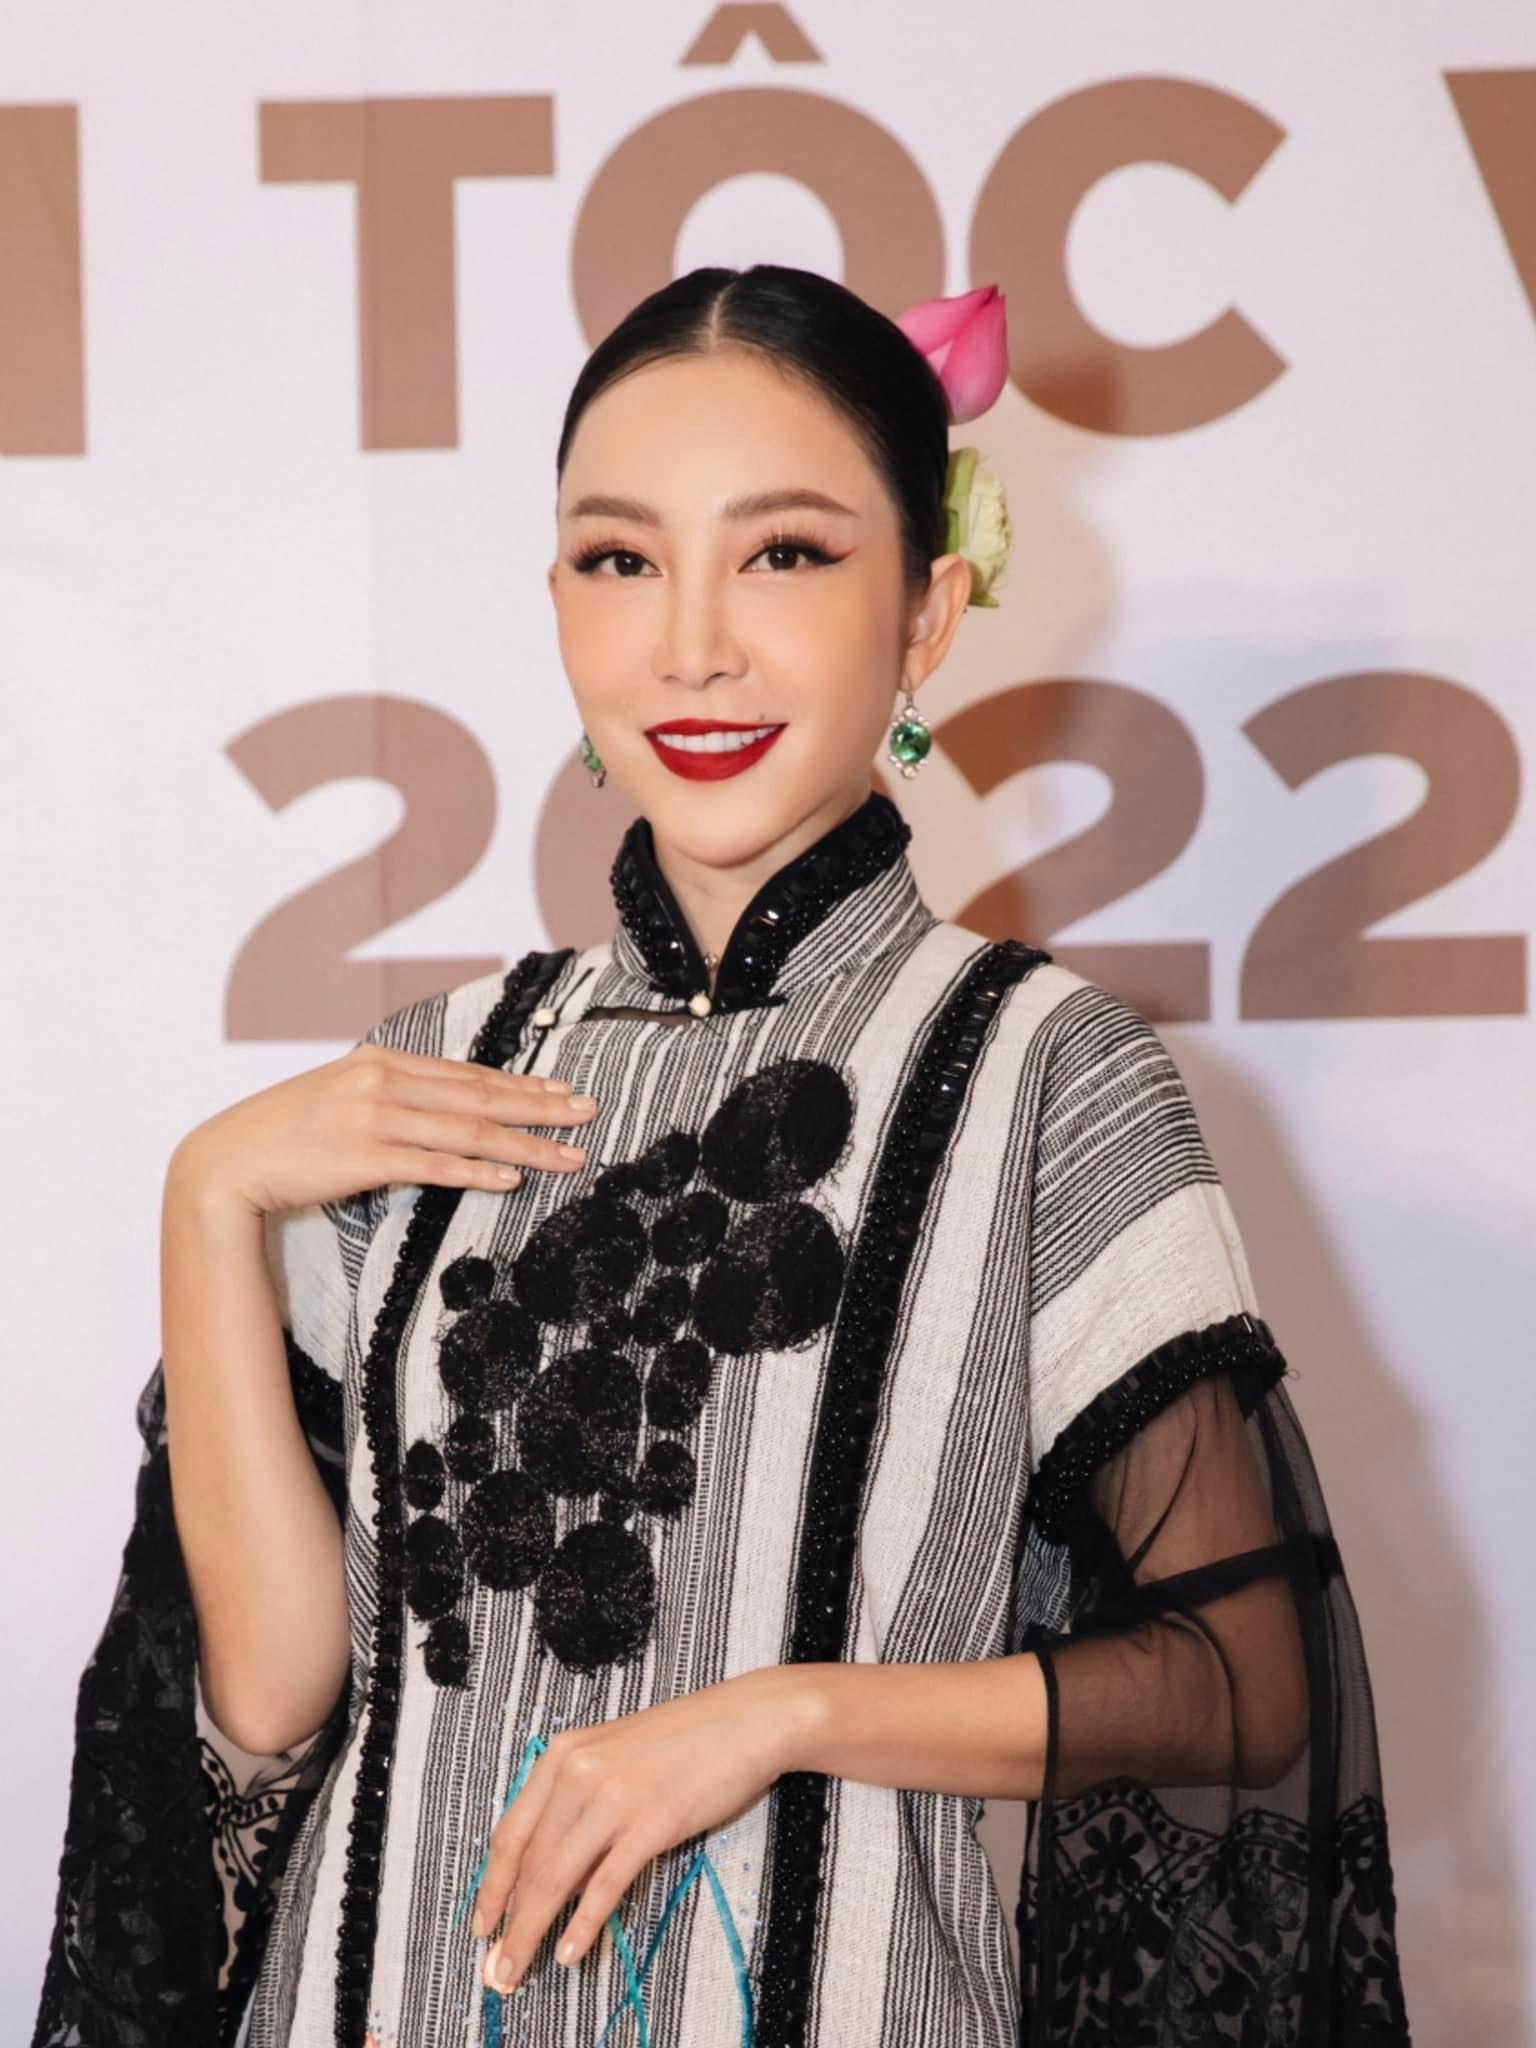 Bên cạnh đó, đêm Chung khảo Hoa hậu các Dân tộc Việt Nam 2022 còn có sự góp mặt của diễn viên múa Linh Nga. Khoác lên mình bộ áo dài với các họa tiết mang đậm bản sắc dân tộc giúp cô nàng thêm phần tỏa sáng.